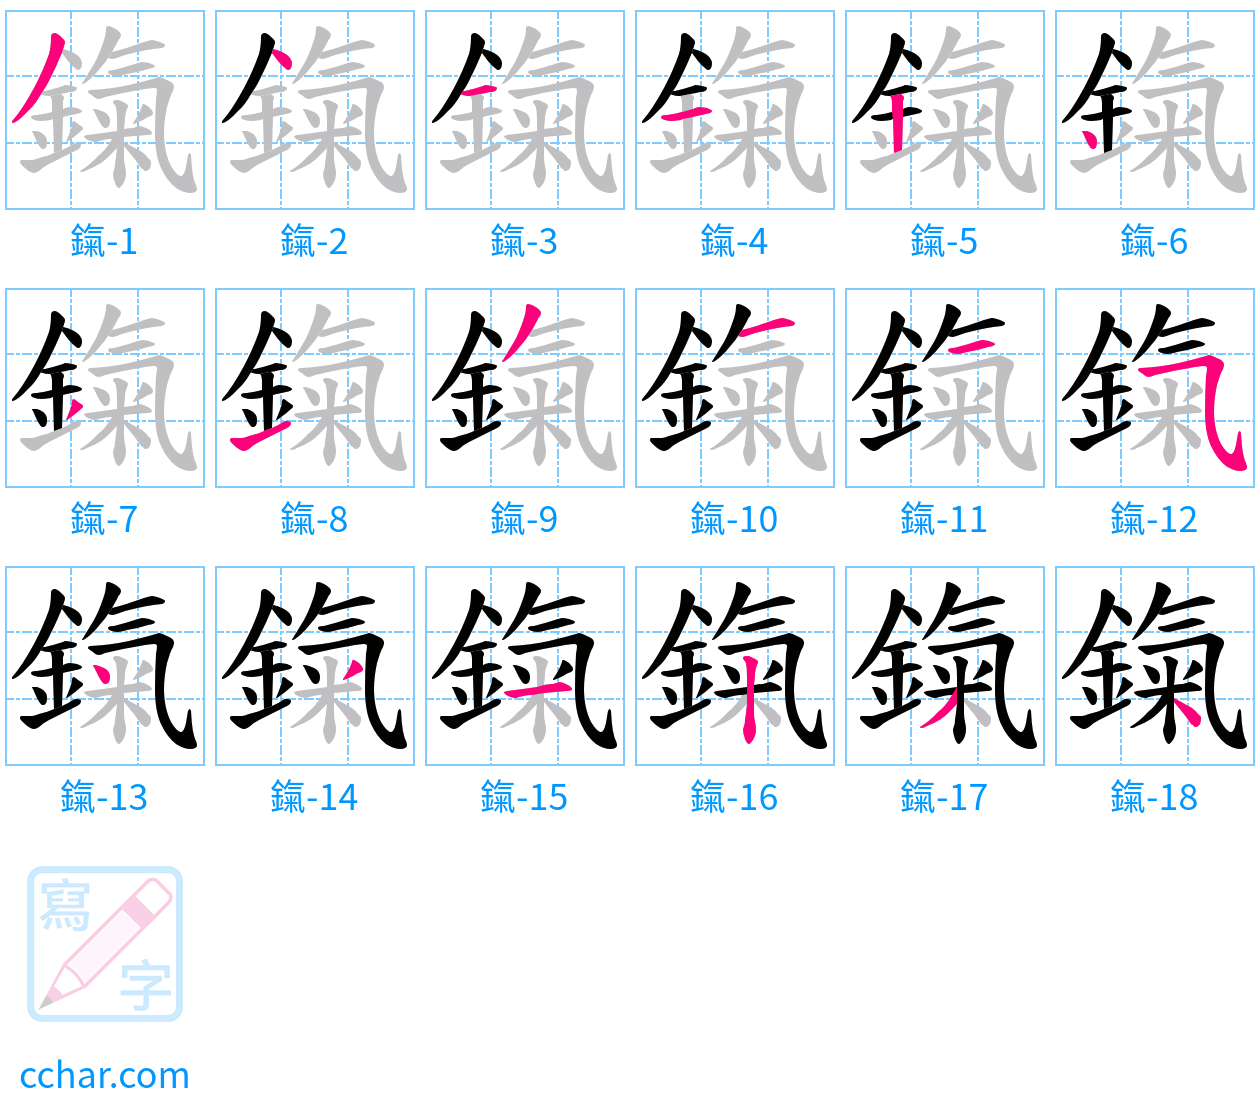 鎎 stroke order step-by-step diagram